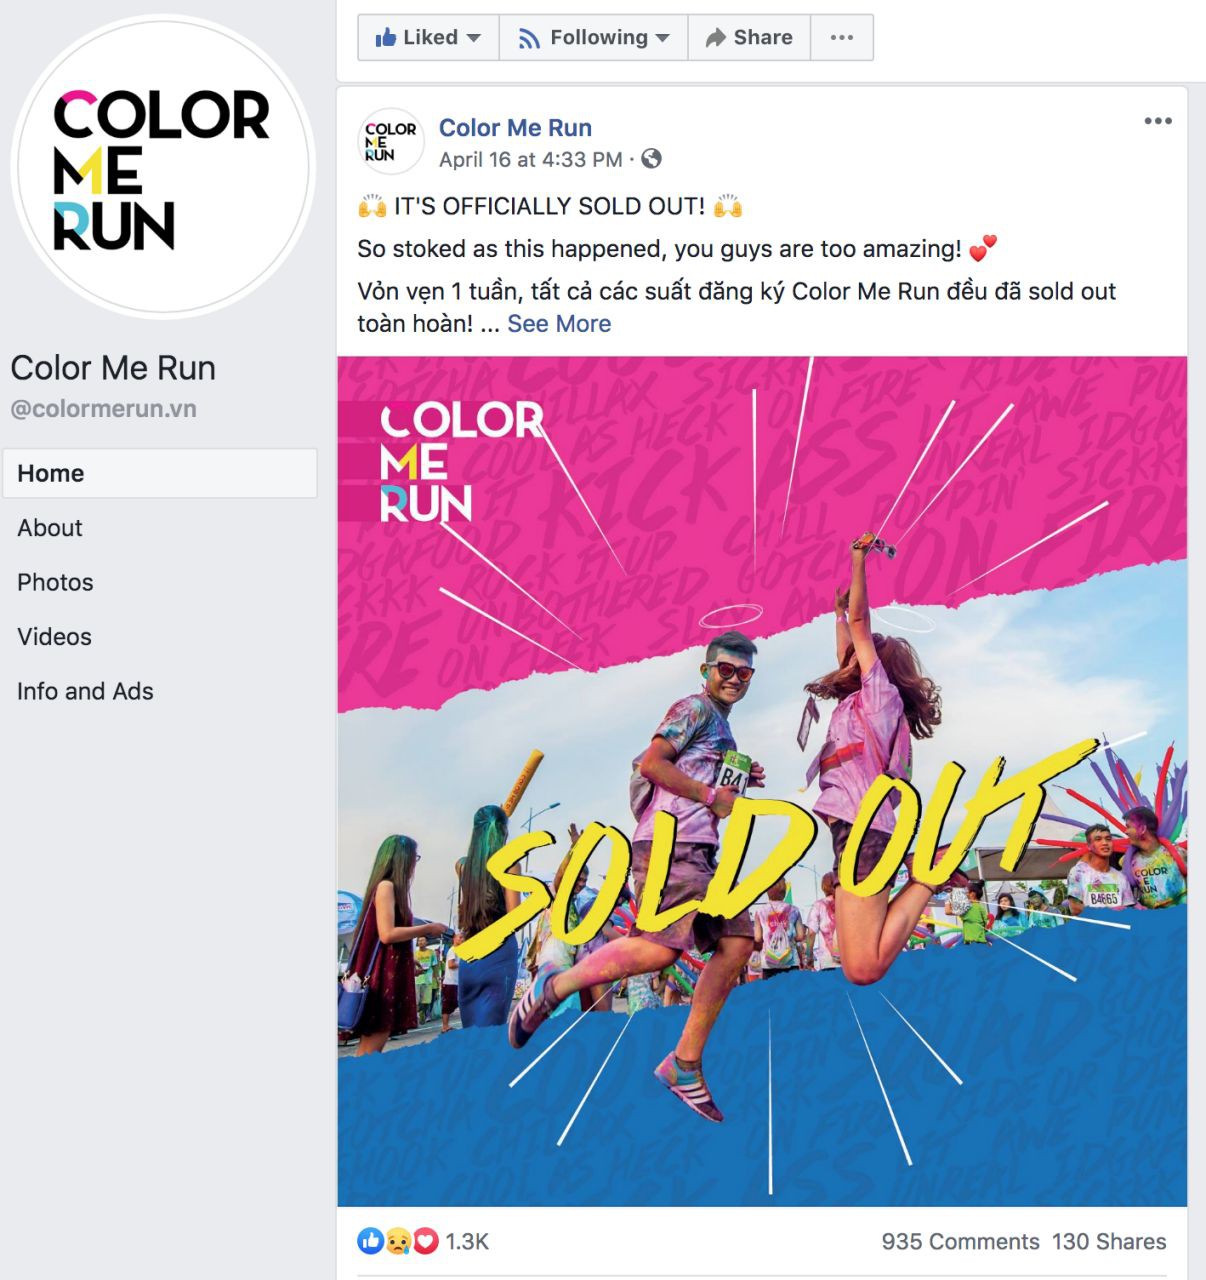 Color Me Run 2019: Lý giải sức hút của một trong những sự kiện hot nhất hè này! - Ảnh 1.